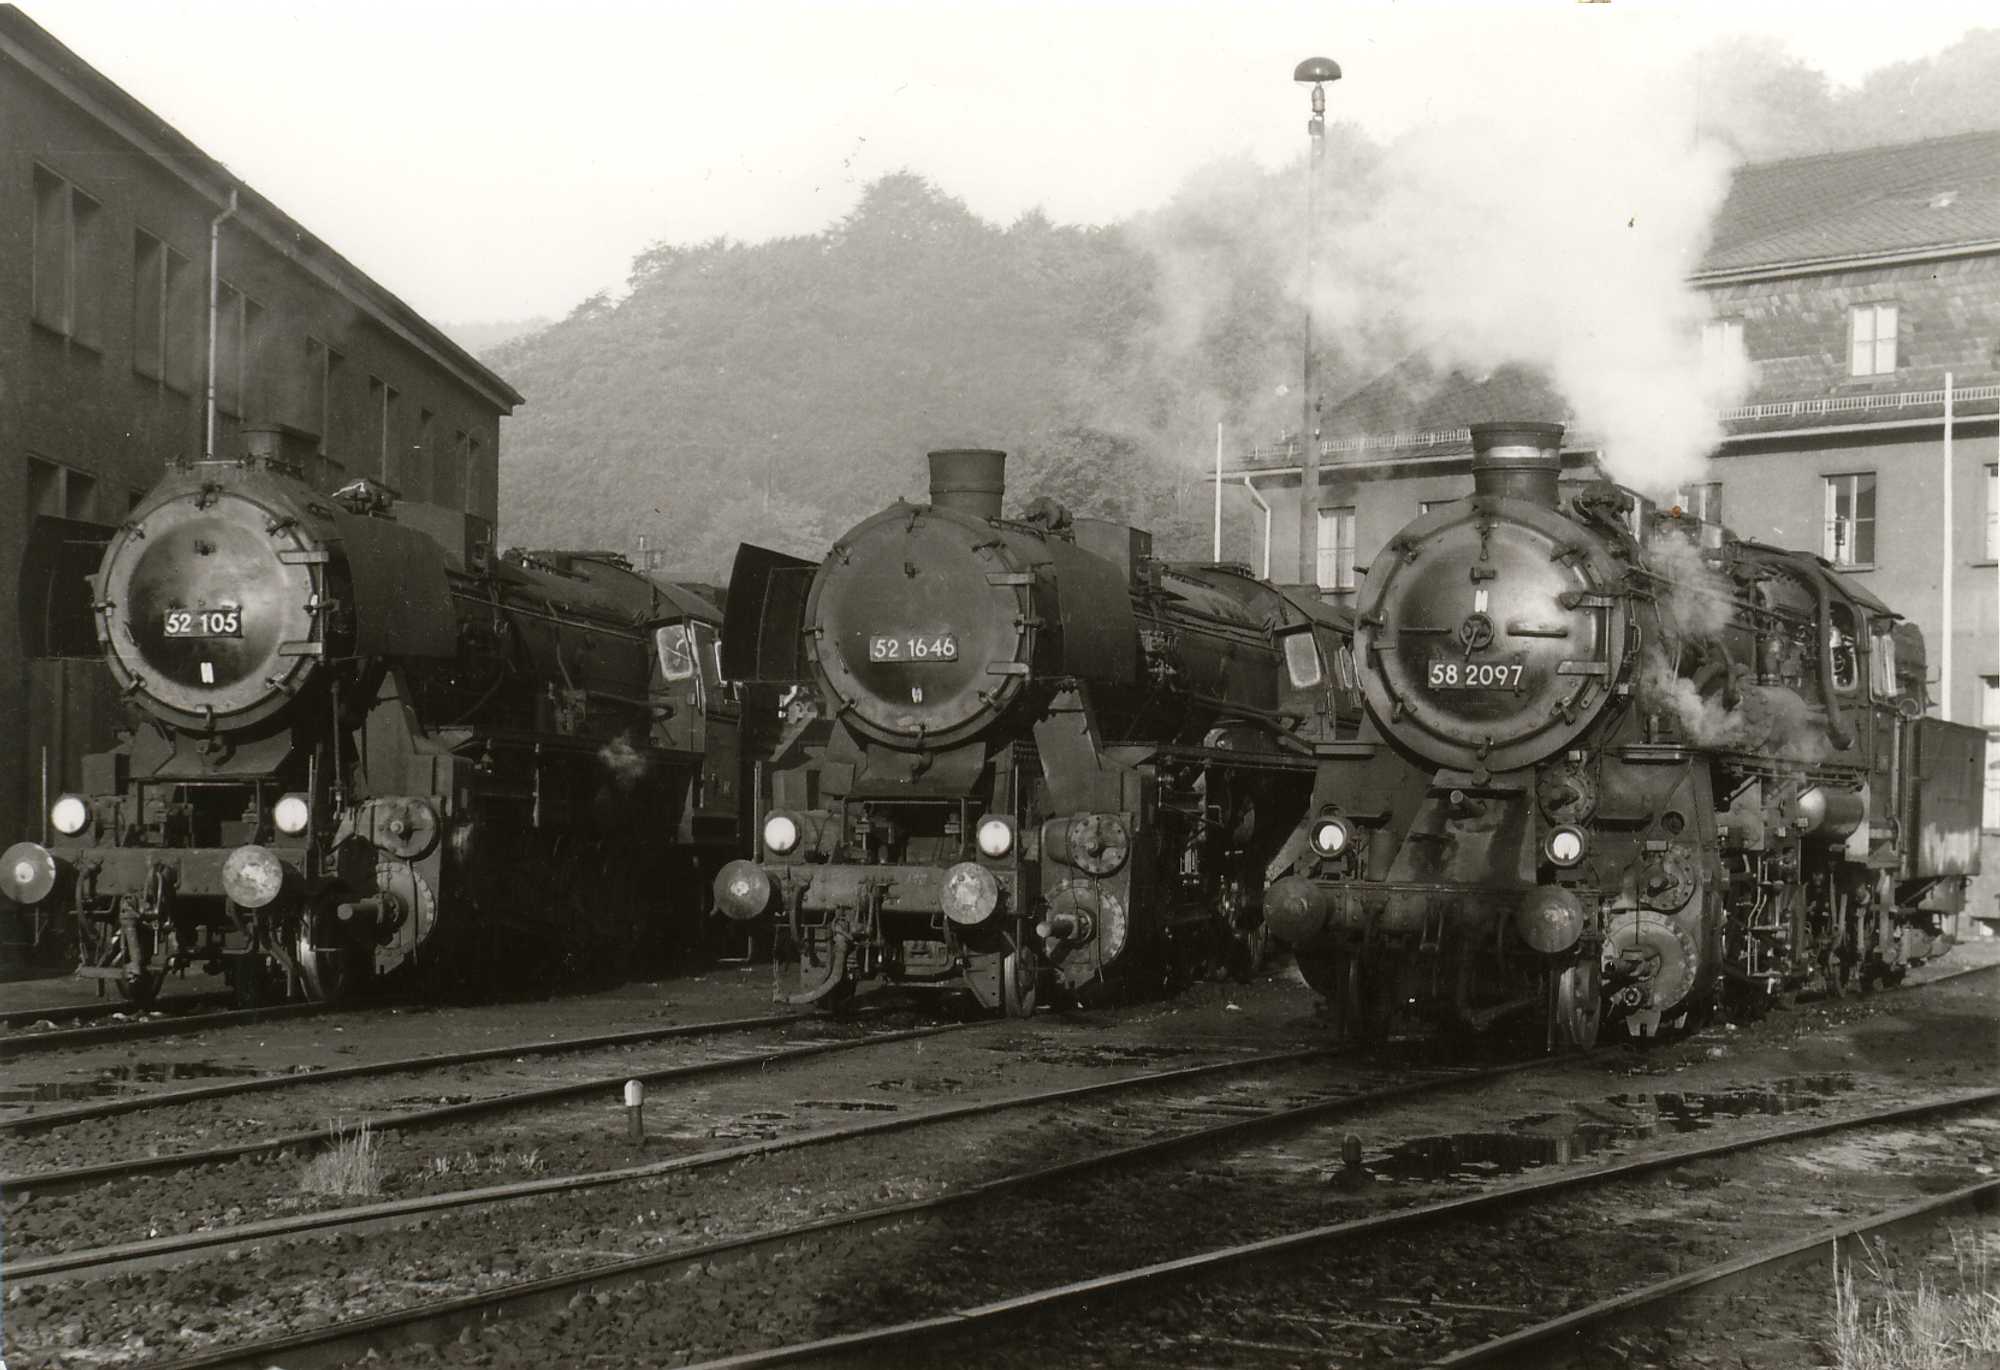 Zur Aushilfe waren ab Sommer 1969 auch Lokomotiven der Baureihen 50 und 52 im Bw Aue stationiert. Am 9. Juni 1969 stehen 52 105 (mit Mischvorwärmer und Giesl-Ejektor) und 52 1646 neben 58 2097 an der neuen Drehscheibe.